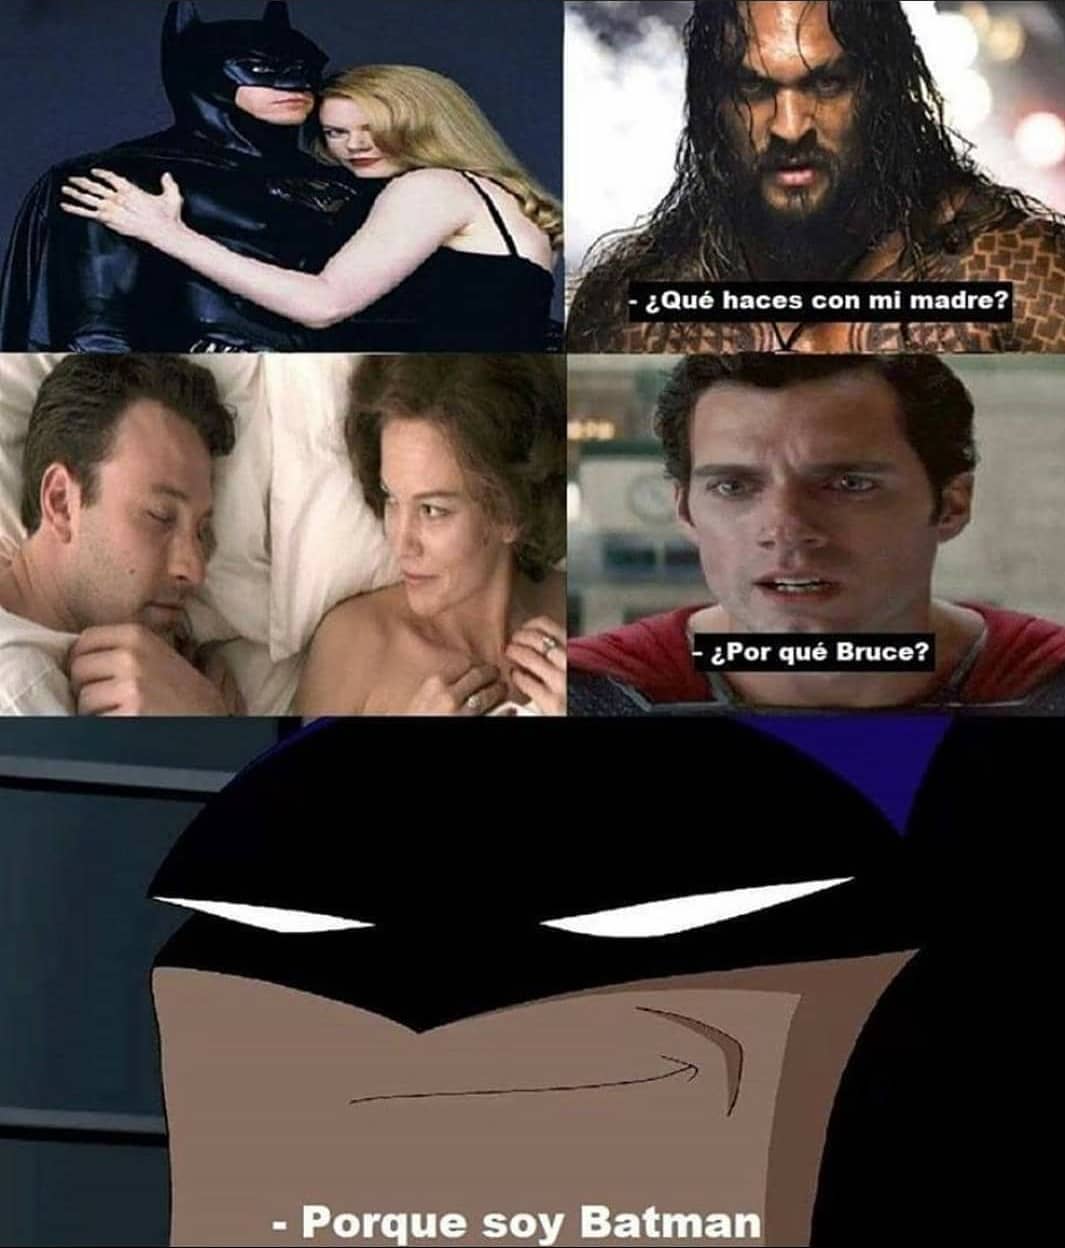 ¿Qué haces con mi madre? ¿Por qué Bruce? Porque soy Batman.